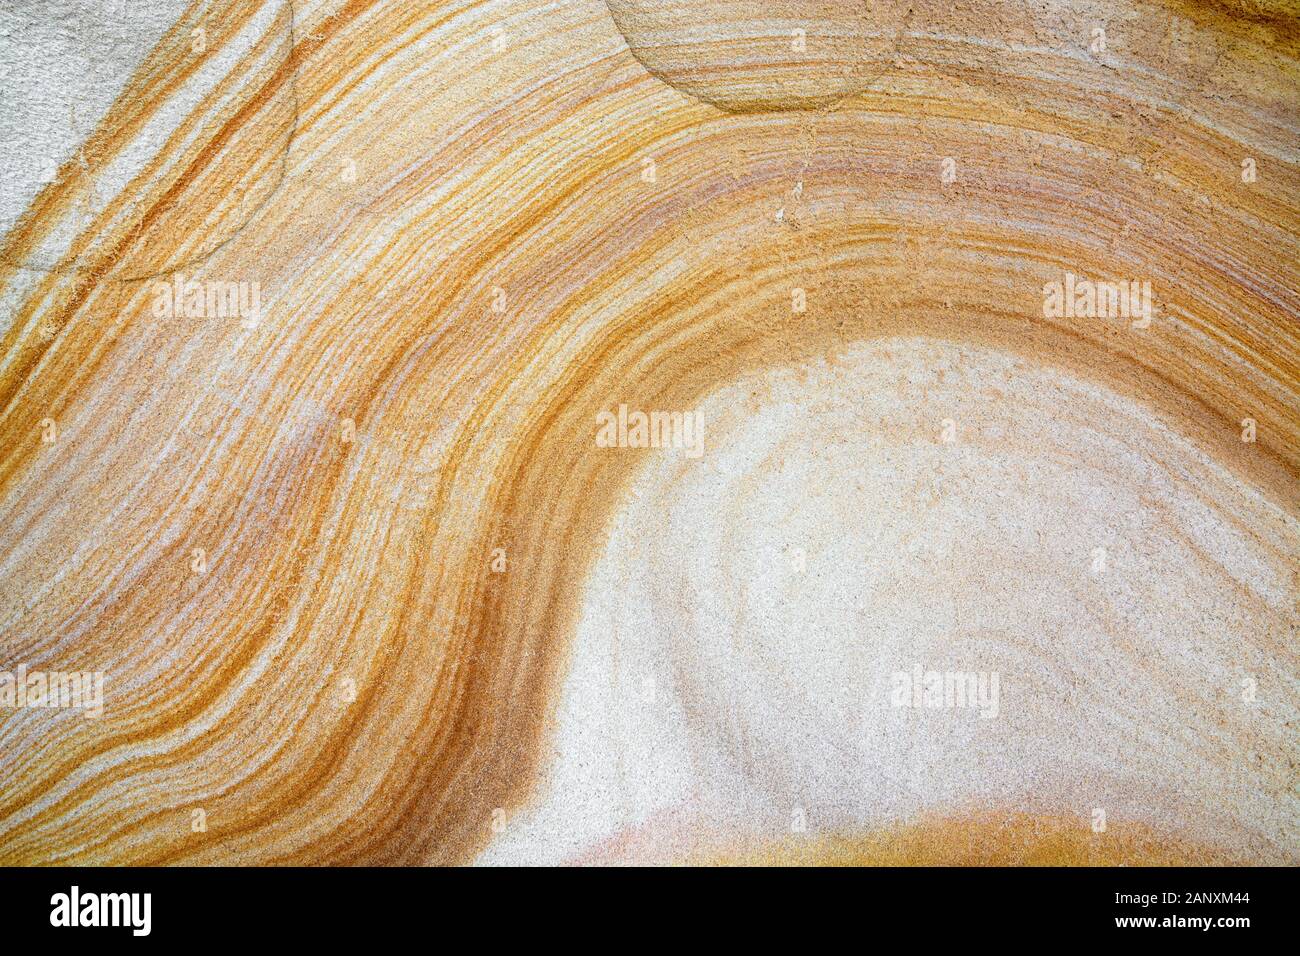 Nahaufnahme der natürlichen Sandsteinfruktur mit gelbem und weißem Wellenmuster Stockfoto